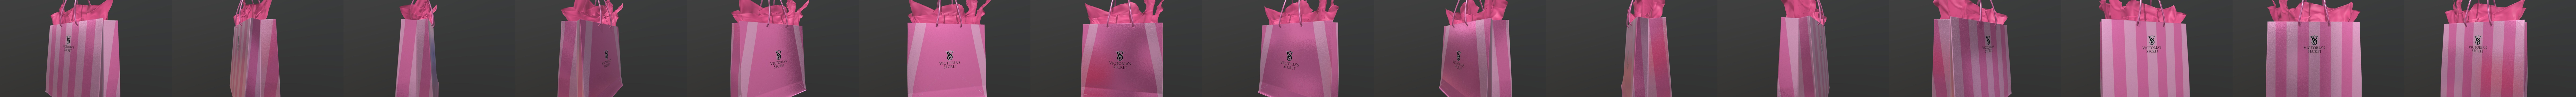 Victoria Secret Shopping Bag PNG Images & PSDs for Download